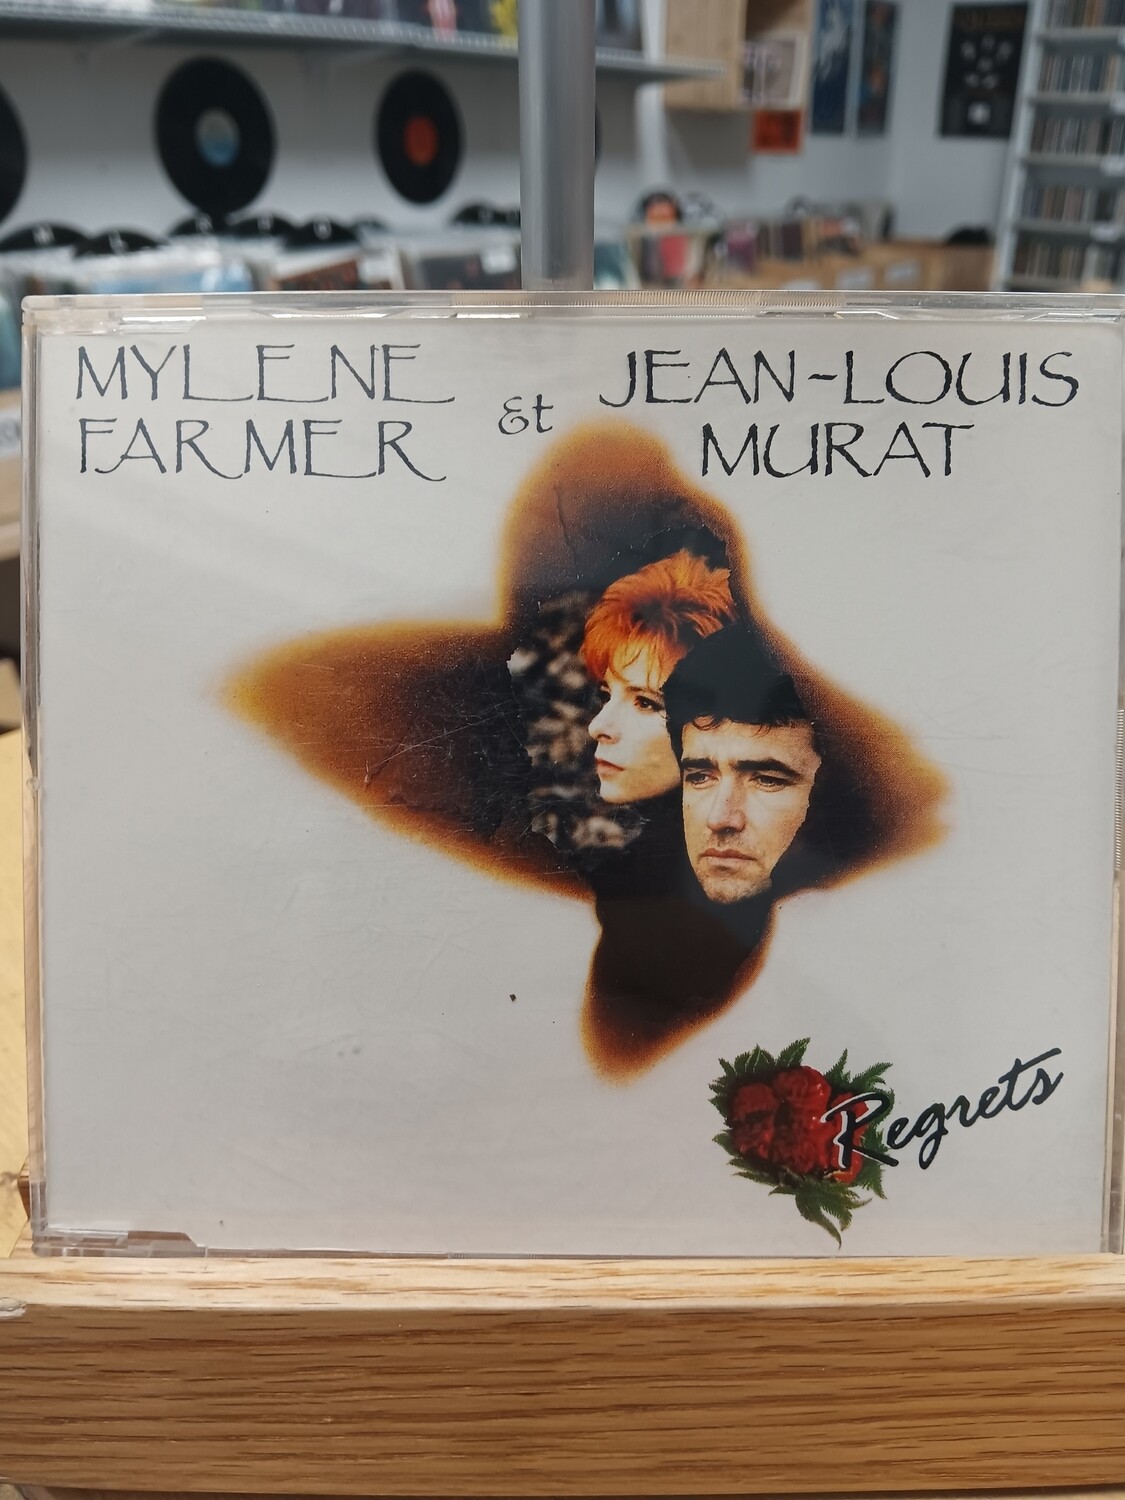 Mylene Farmer & Jean-Louis Murat - Regrets (CD)